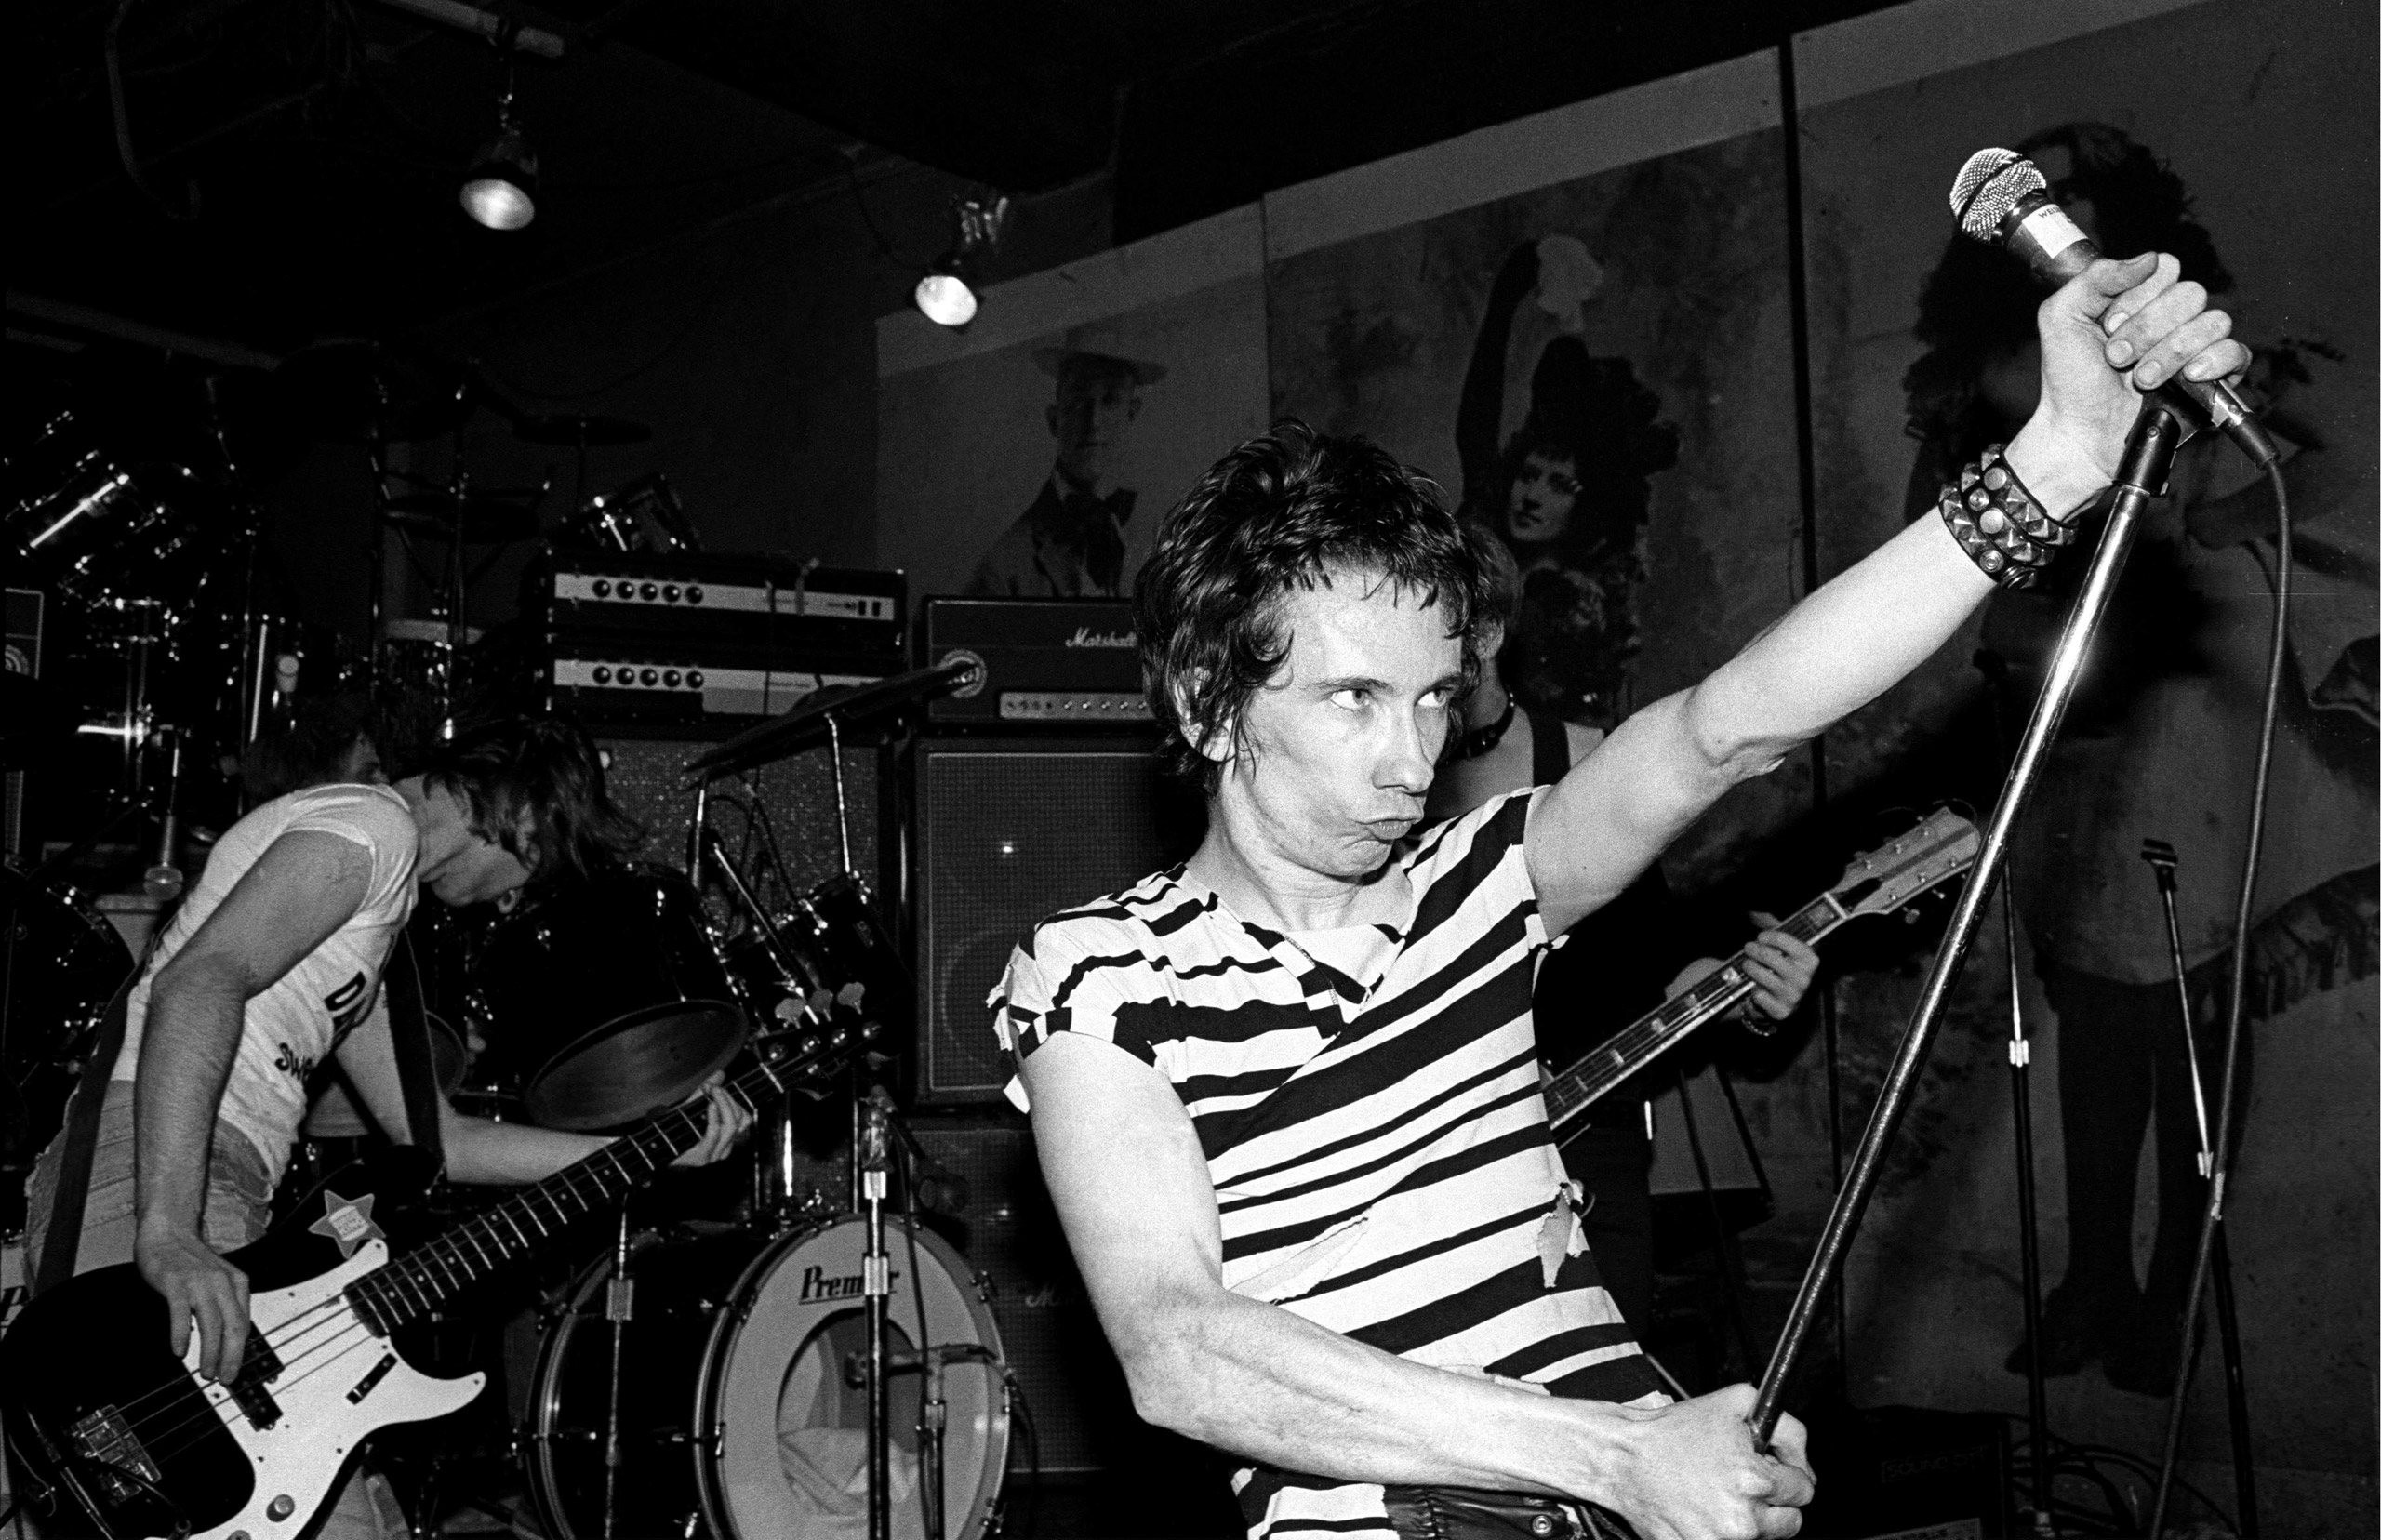 Dead Boys performing at CBGB in 1977.